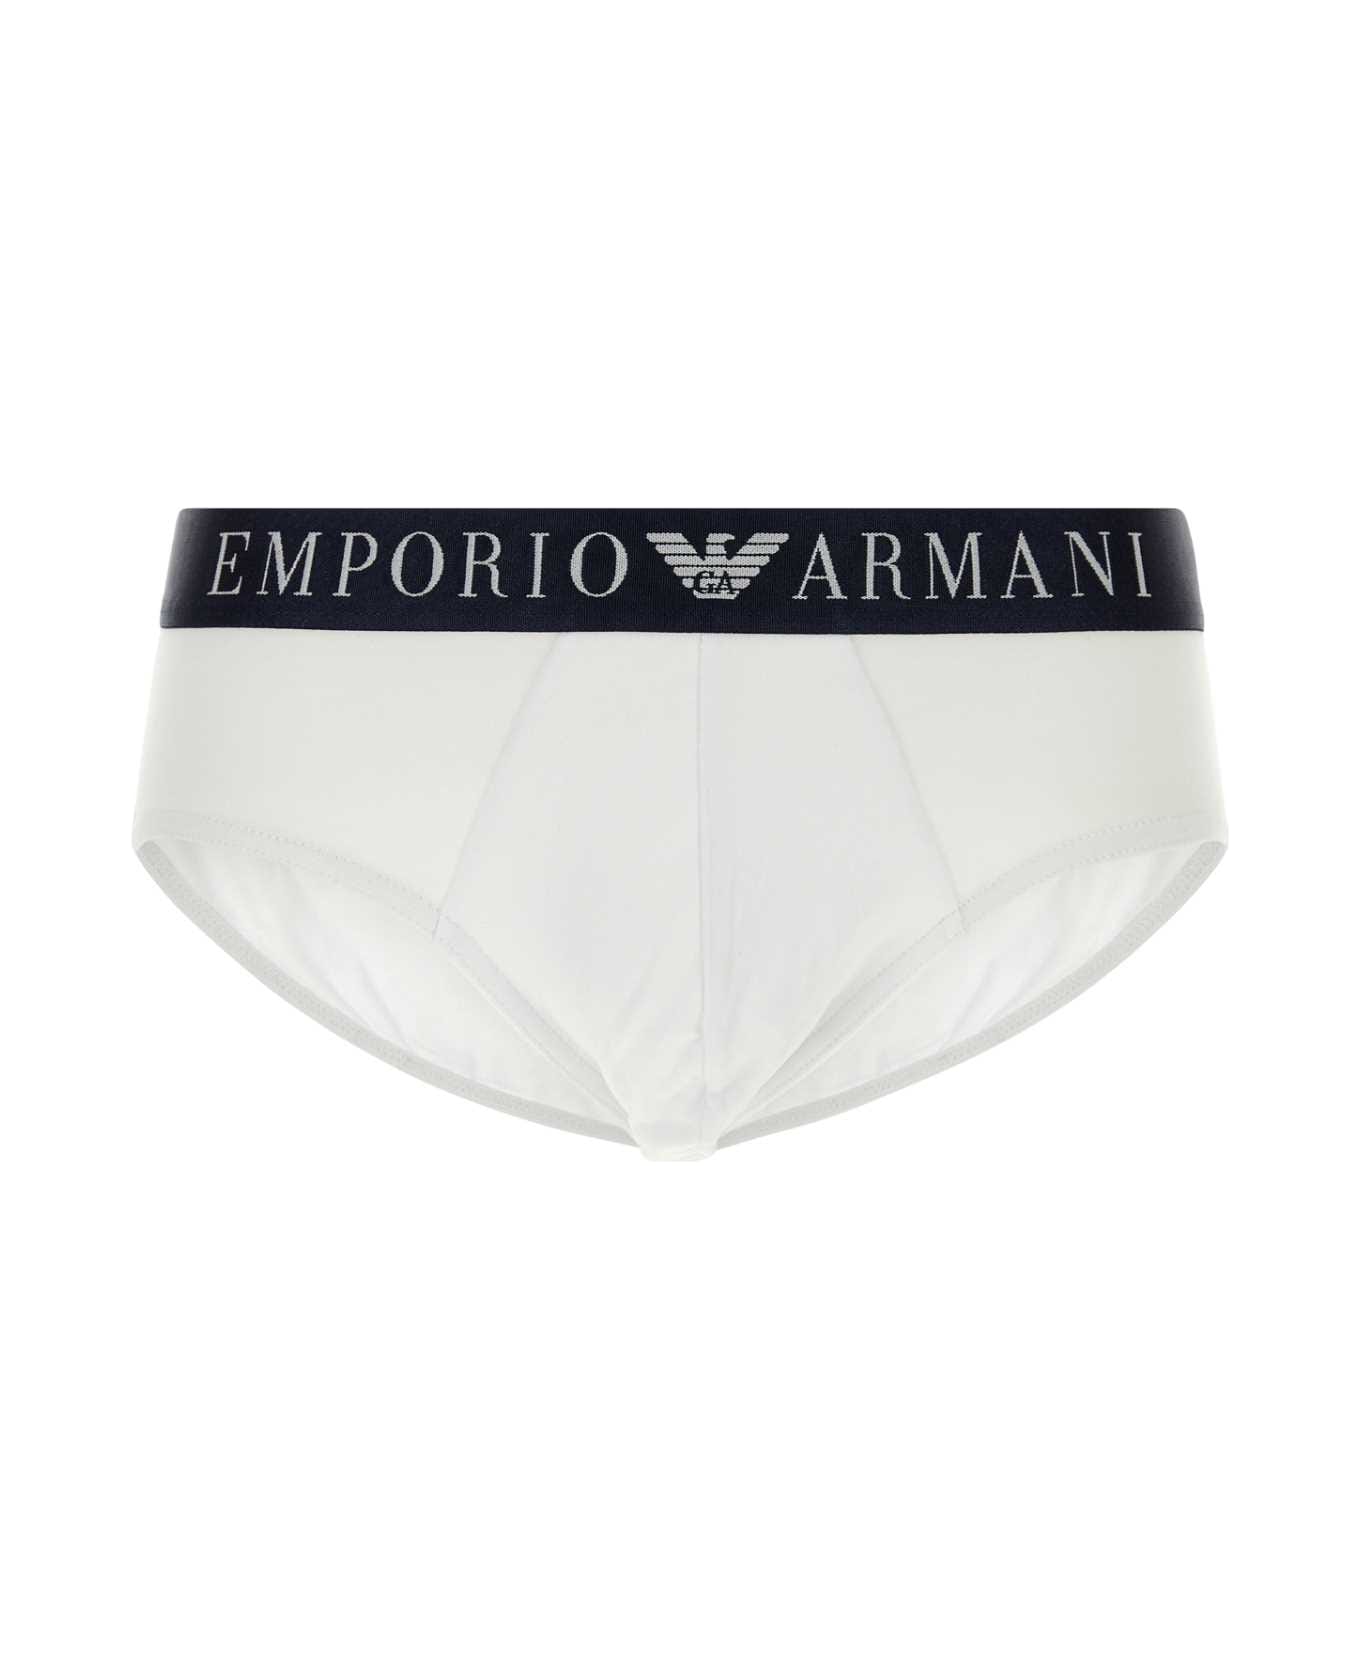 Emporio Armani White Stretch Cotton Brief - 00010